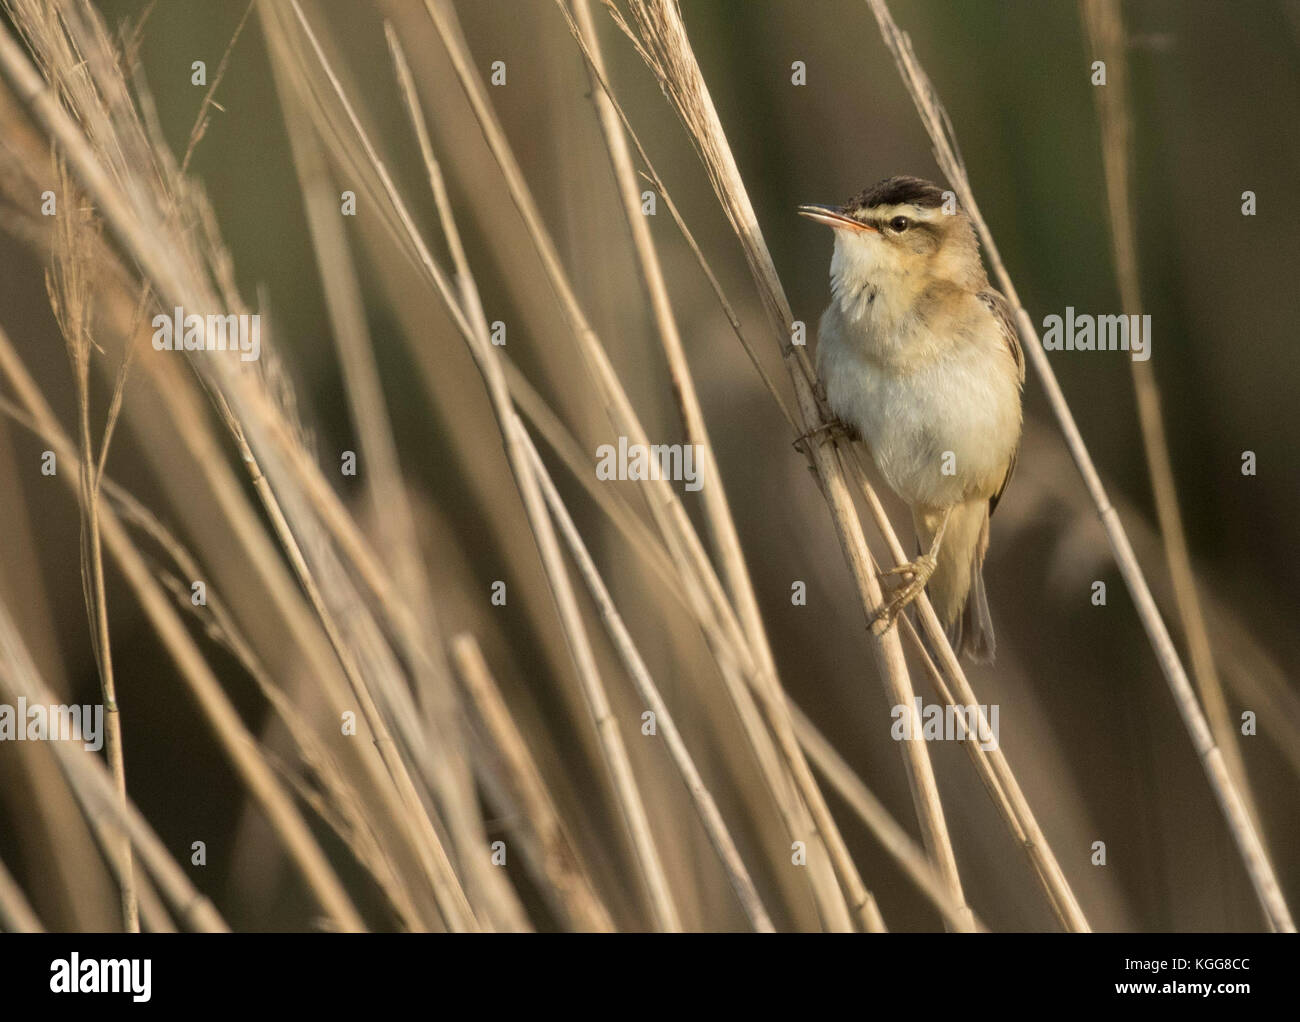 Sedge warbler taking a peek Stock Photo